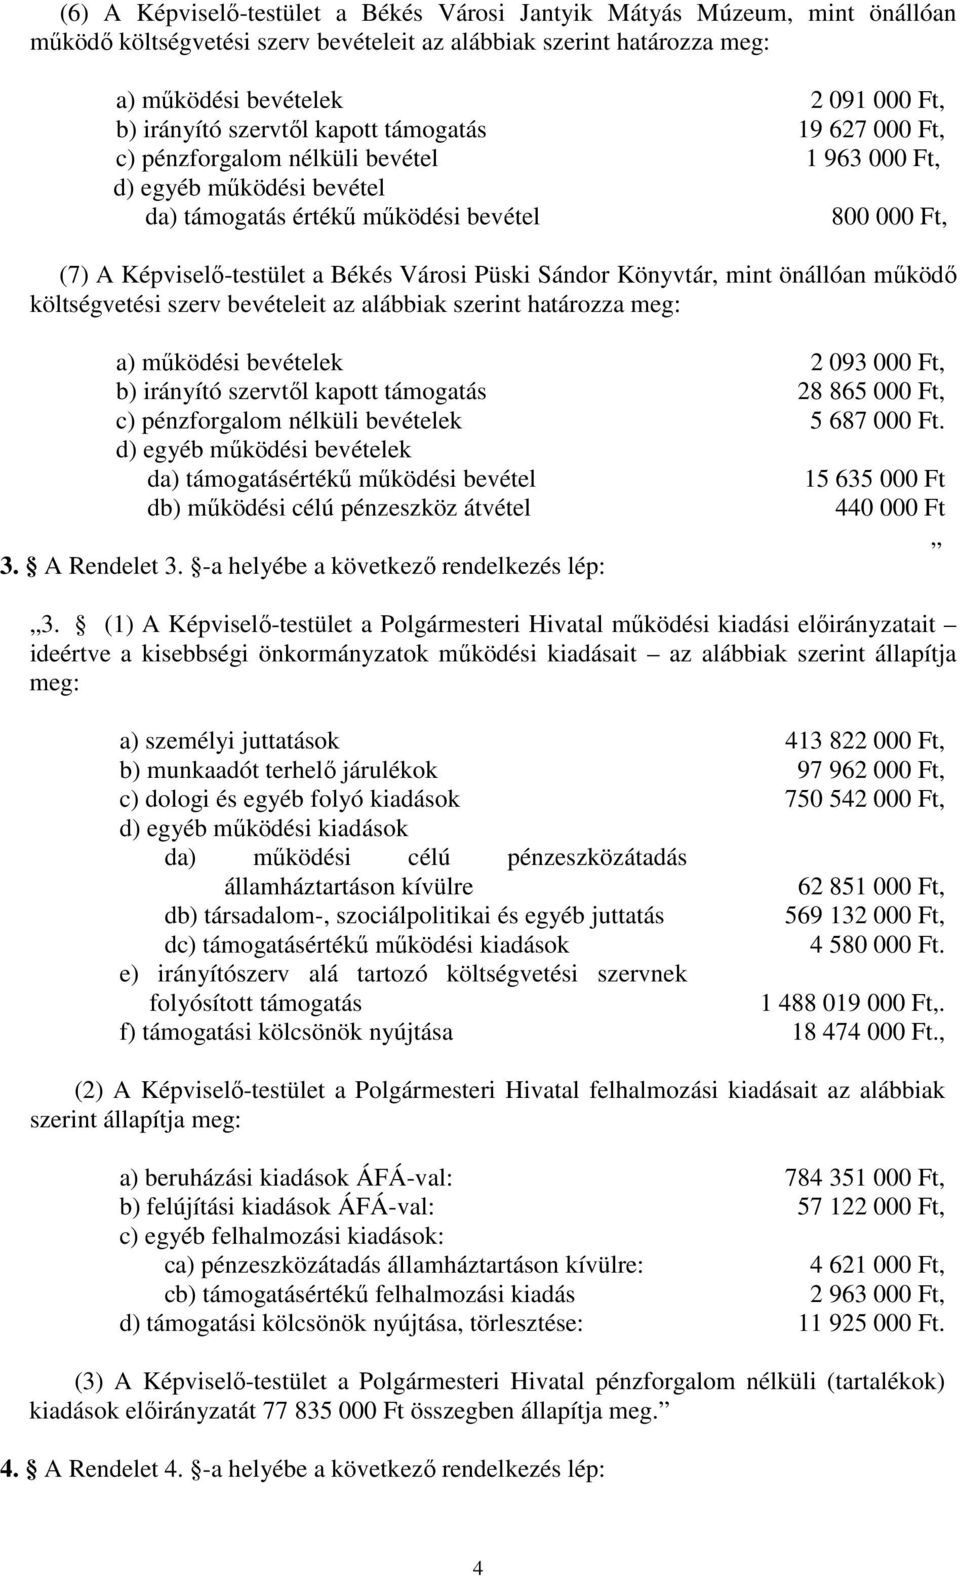 Városi Püski Sándor Könyvtár, mint önállóan működő költségvetési szerv bevételeit az alábbiak szerint határozza meg: a) működési bevételek 2 093 000 Ft, b) irányító szervtől kapott támogatás 28 865